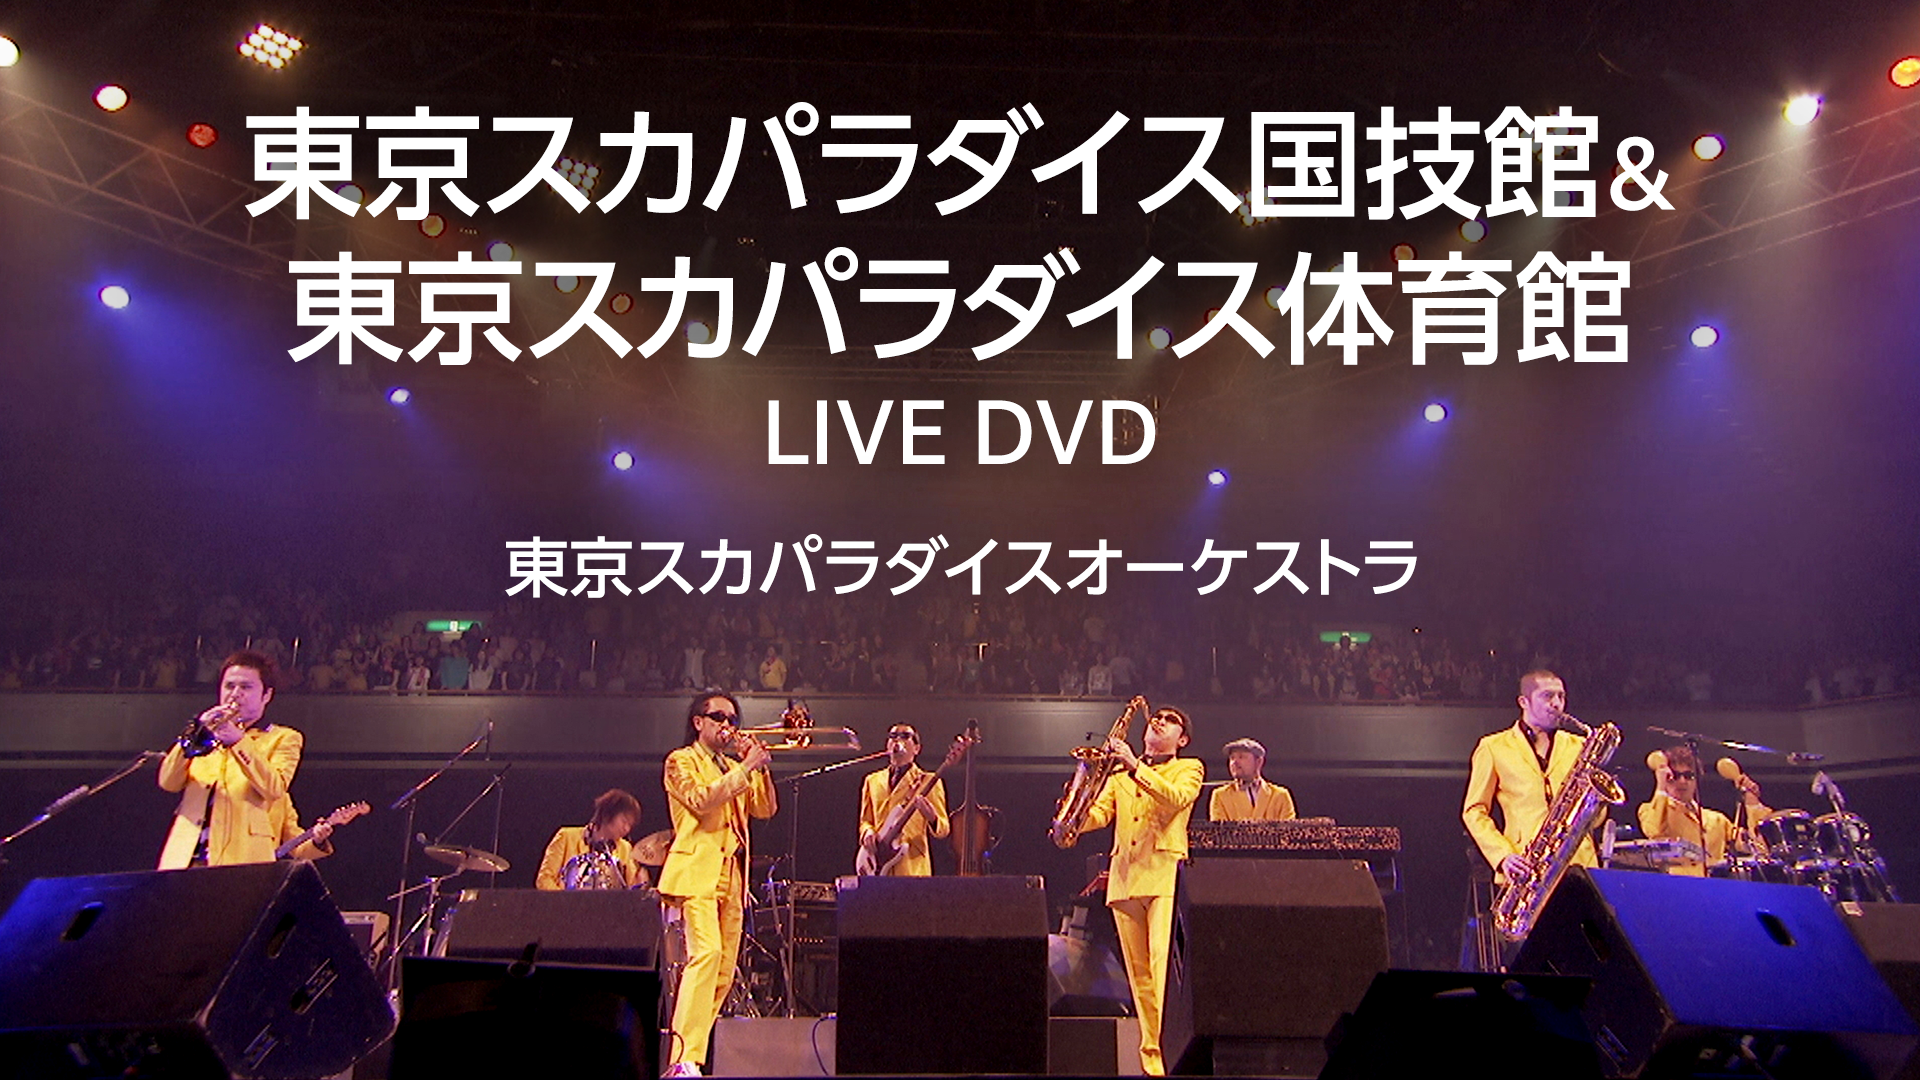 東京スカパラダイス国技館＆東京スカパラダイス体育館 LIVE DVD(音楽 